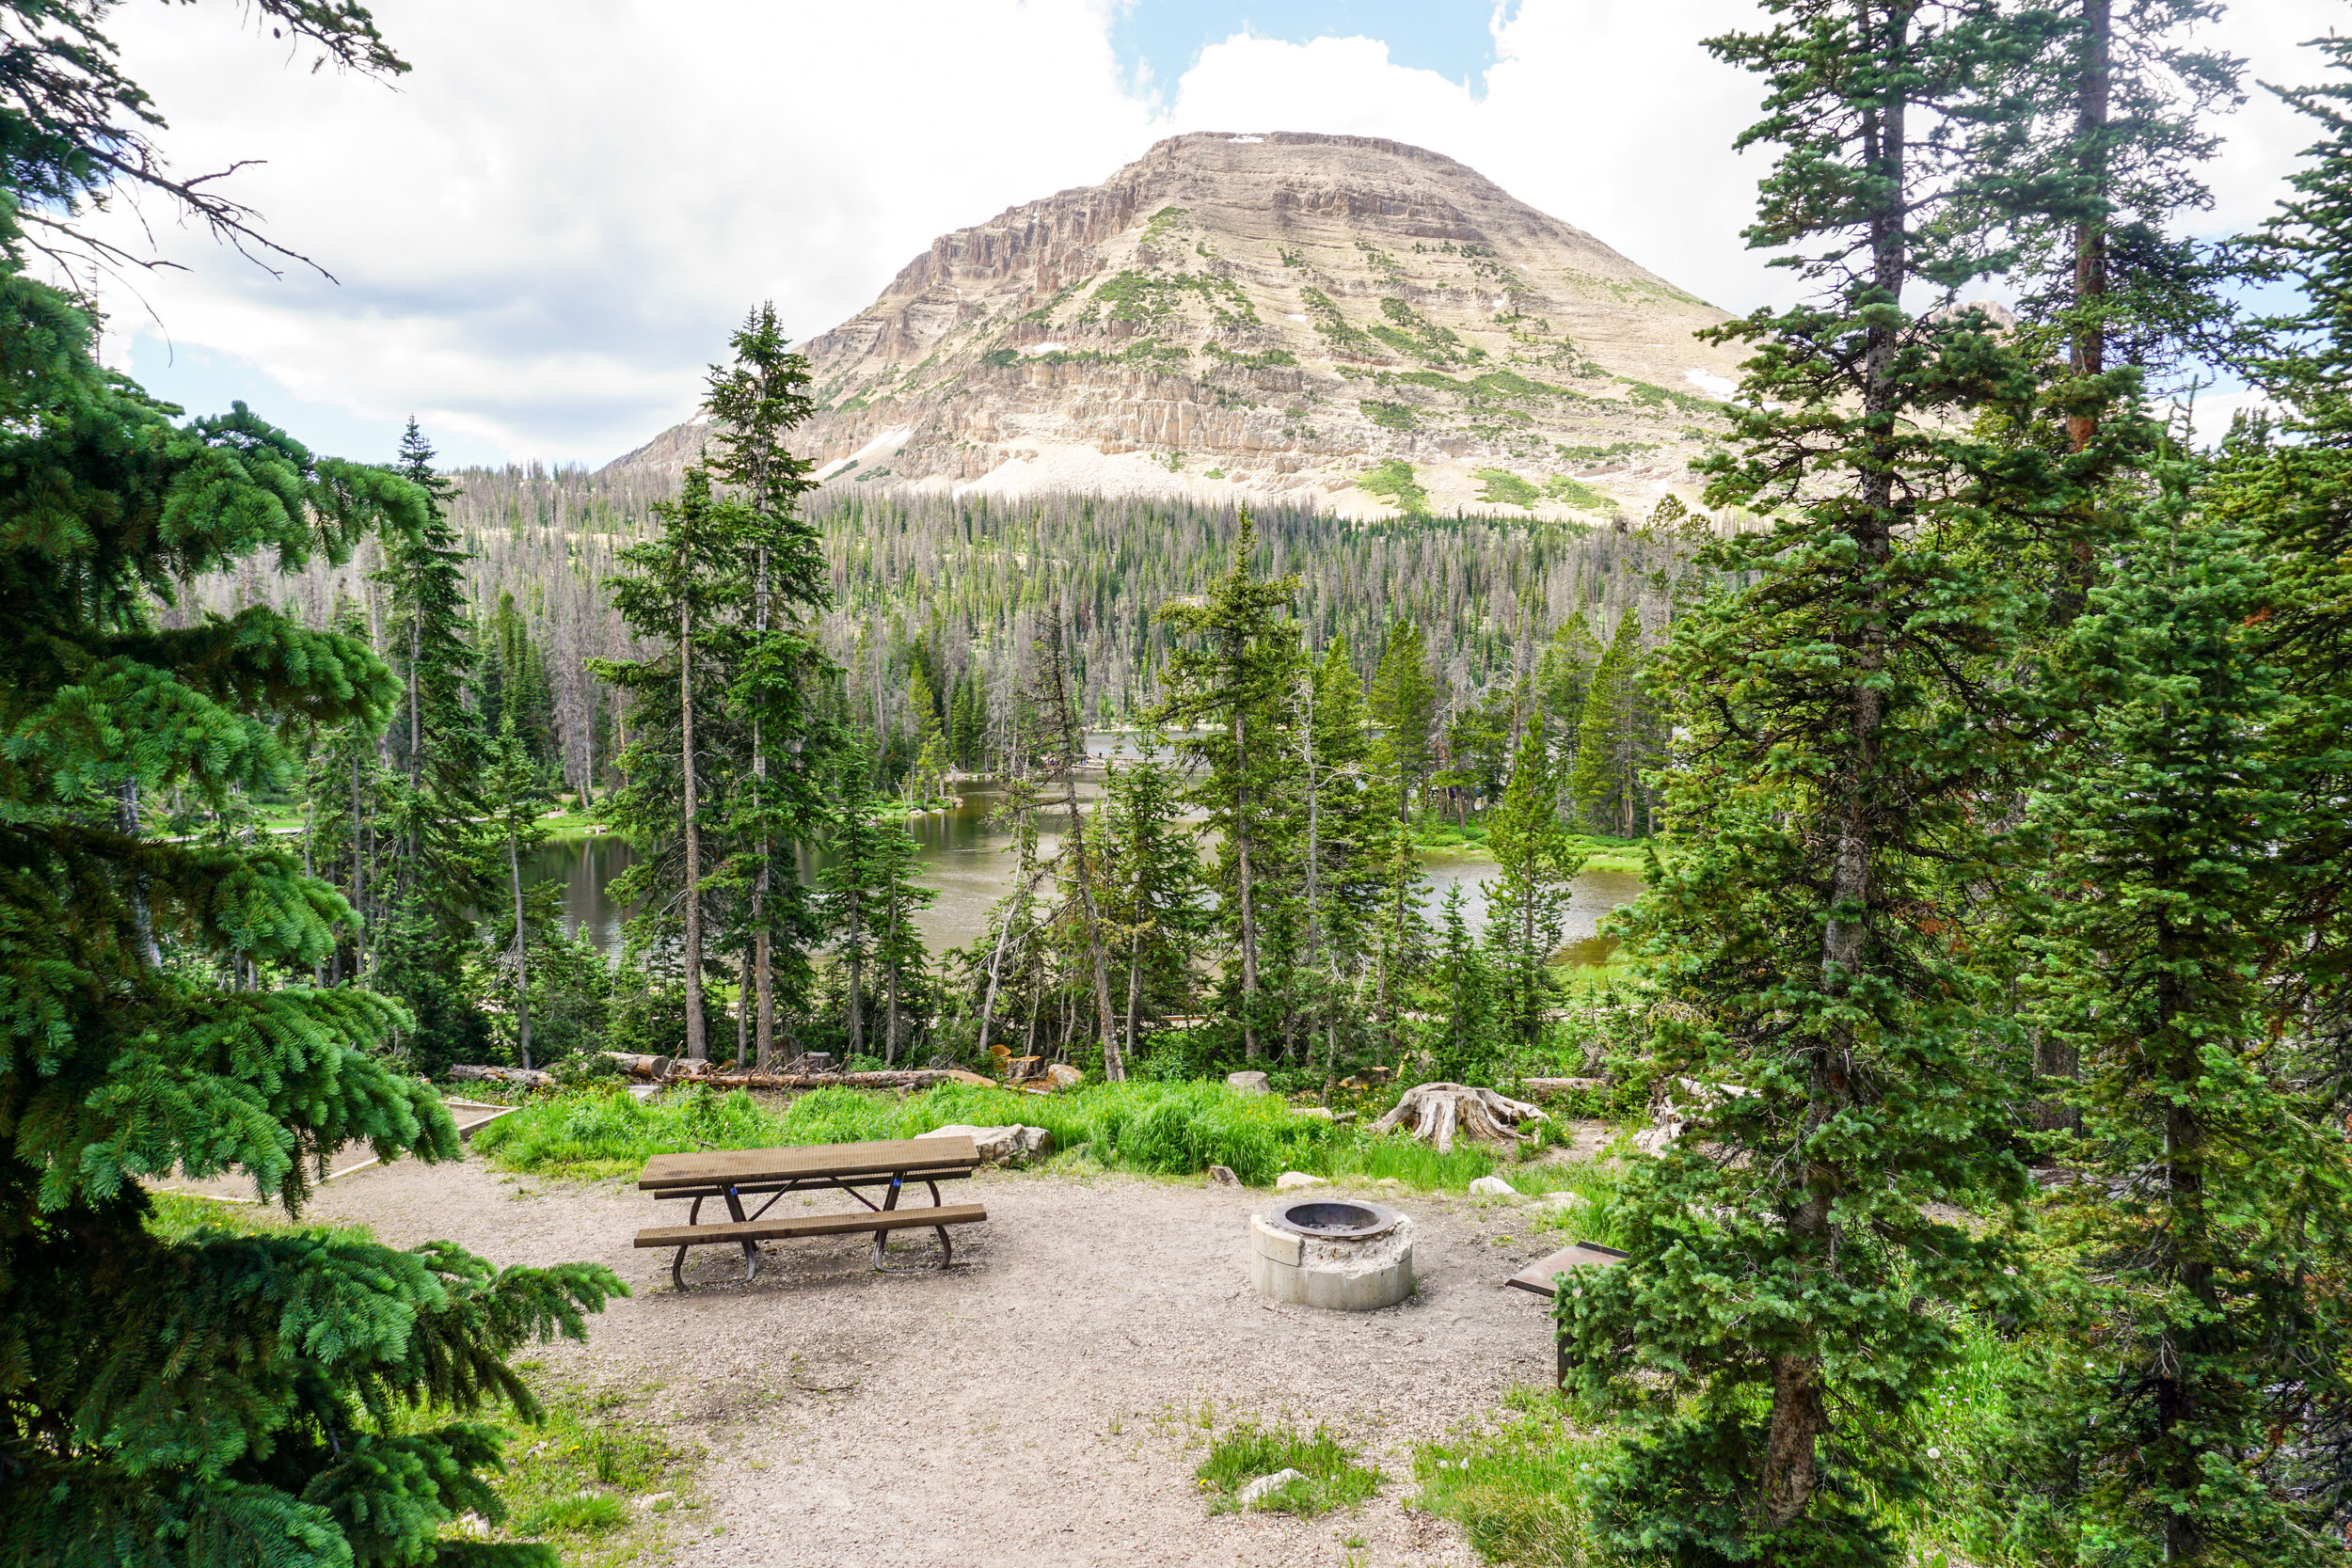 Heber-Kamas District — Go Camp Utah | Camping and Recreation in Utah, USA